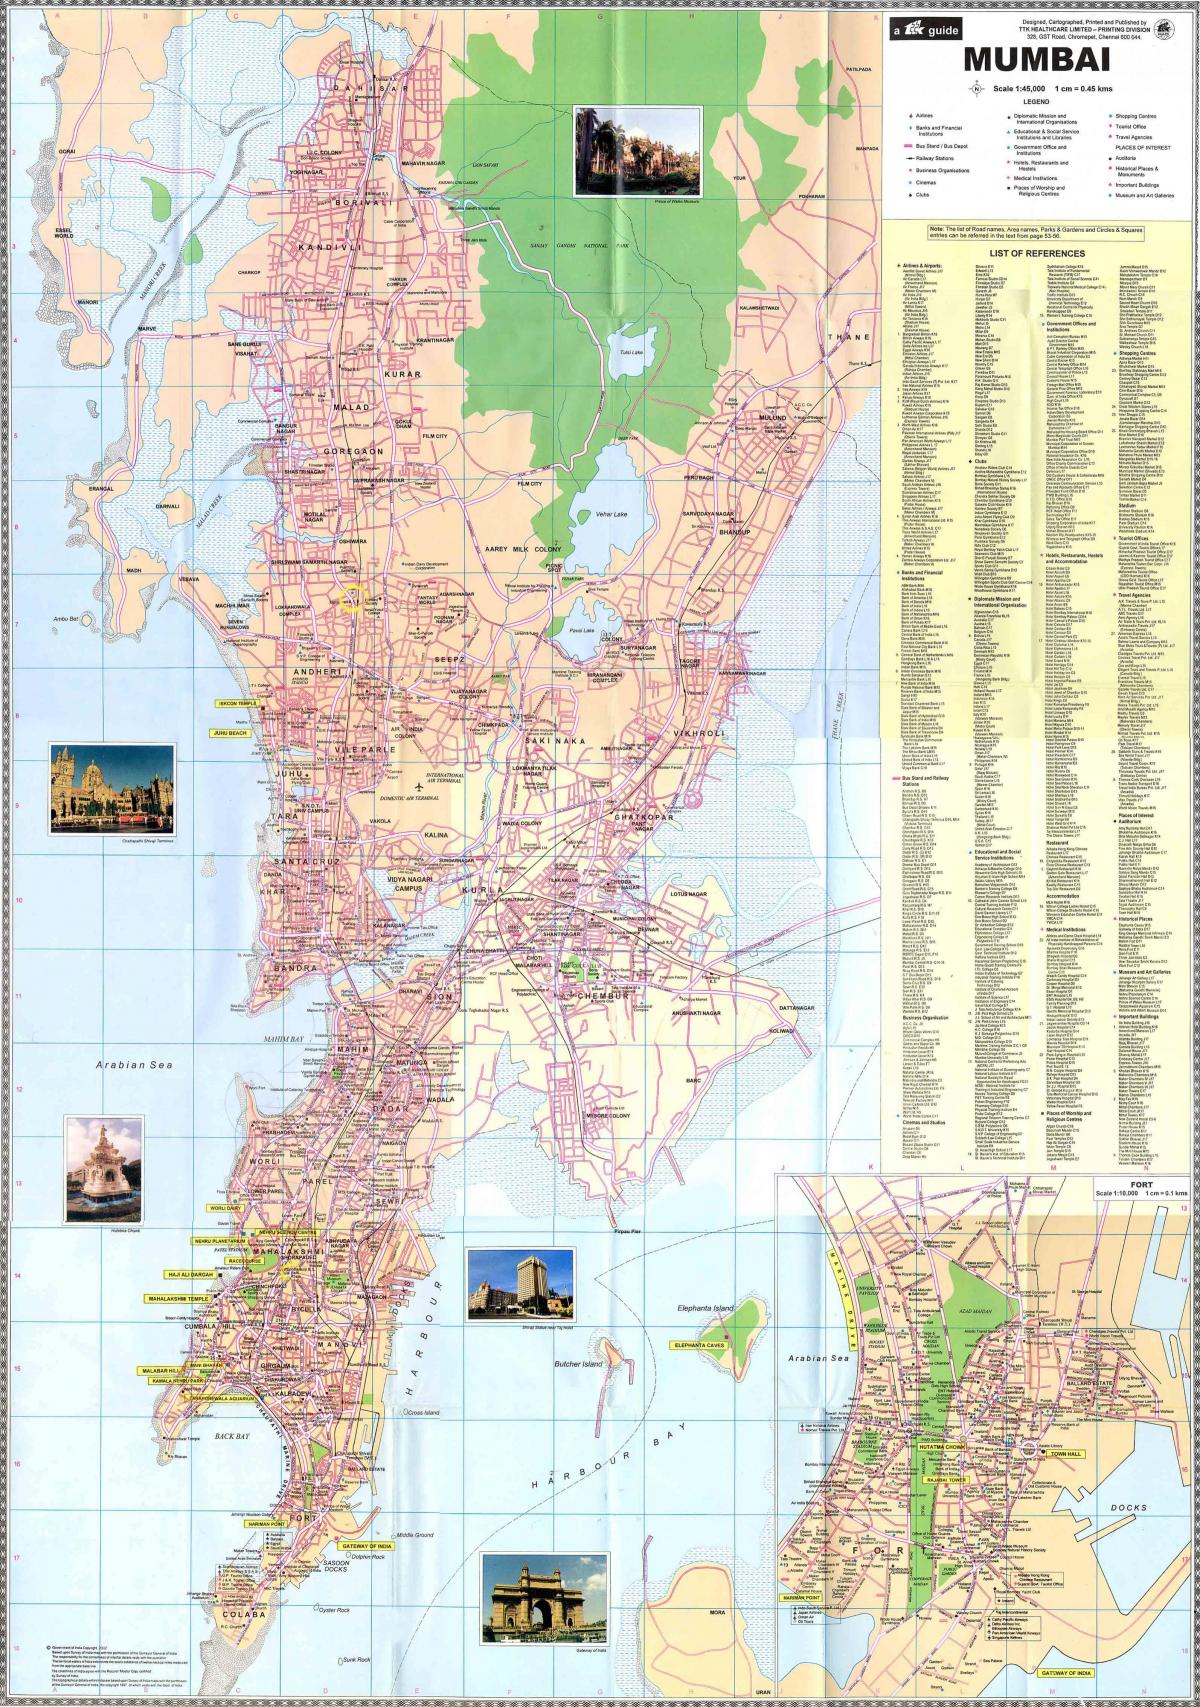 Mumbai - Bombay city center map